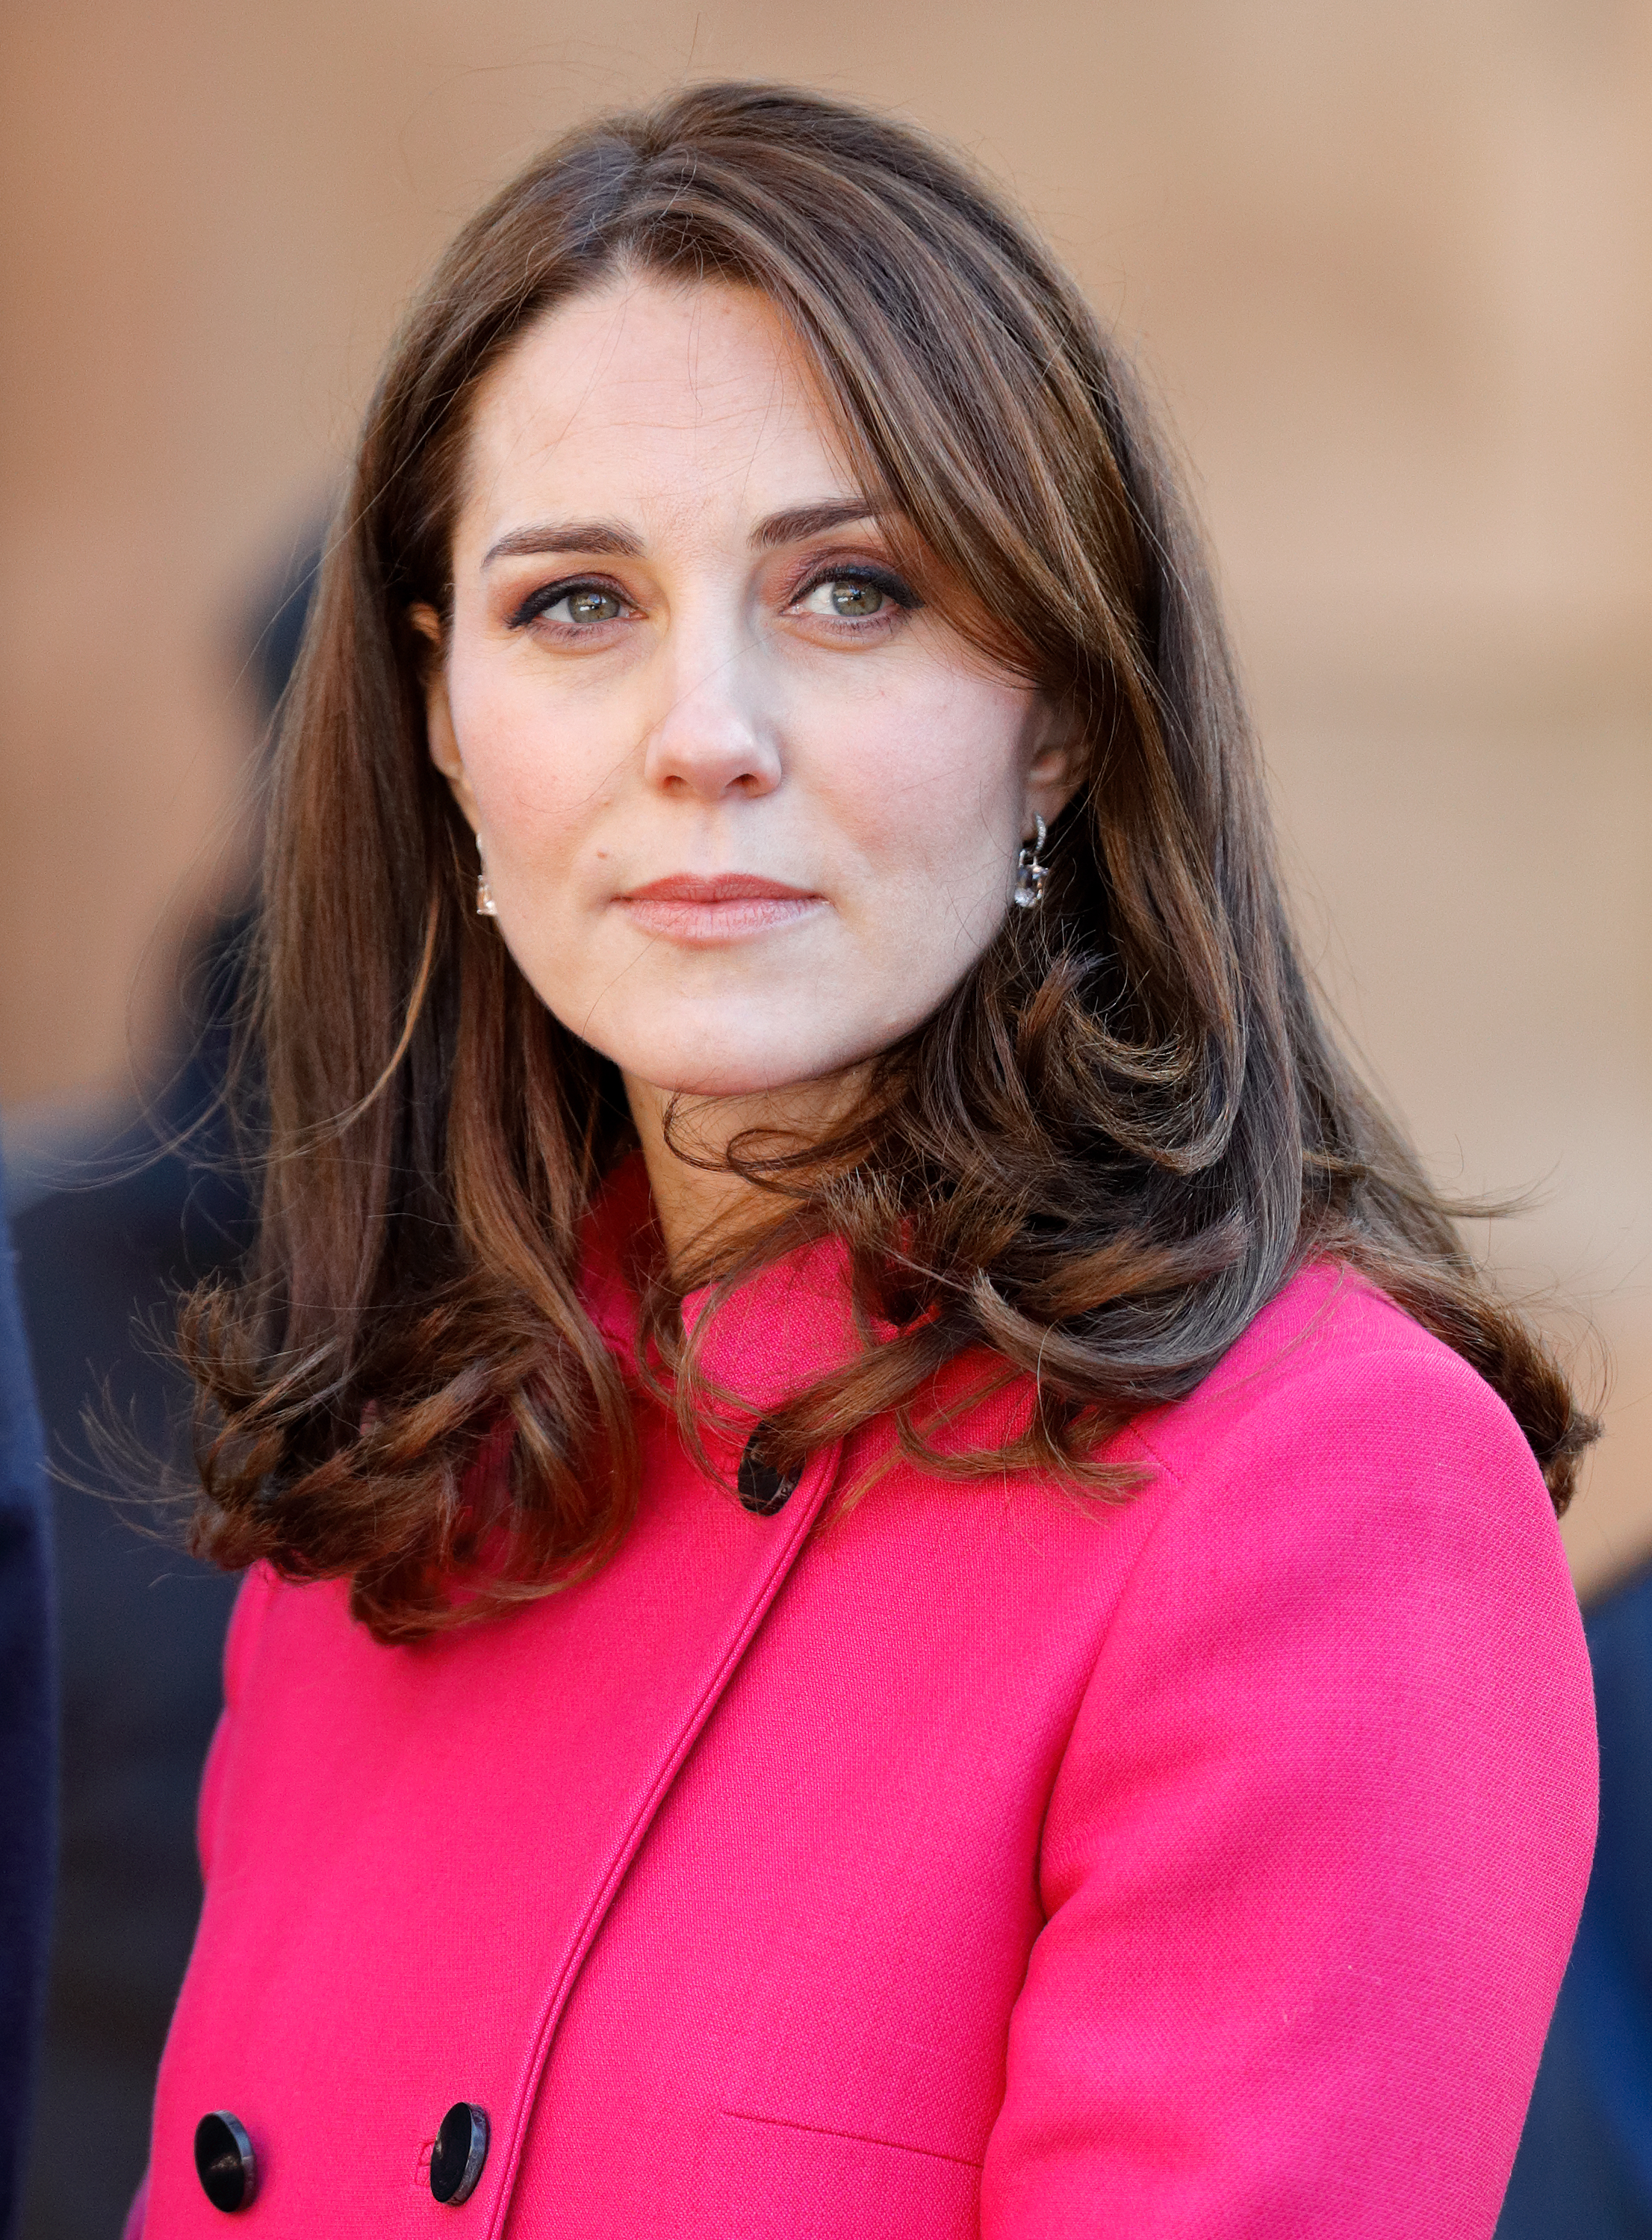 Prinzessin von Wales in der Kathedrale von Coventry im Jahr 2018 | Quelle: Getty Images